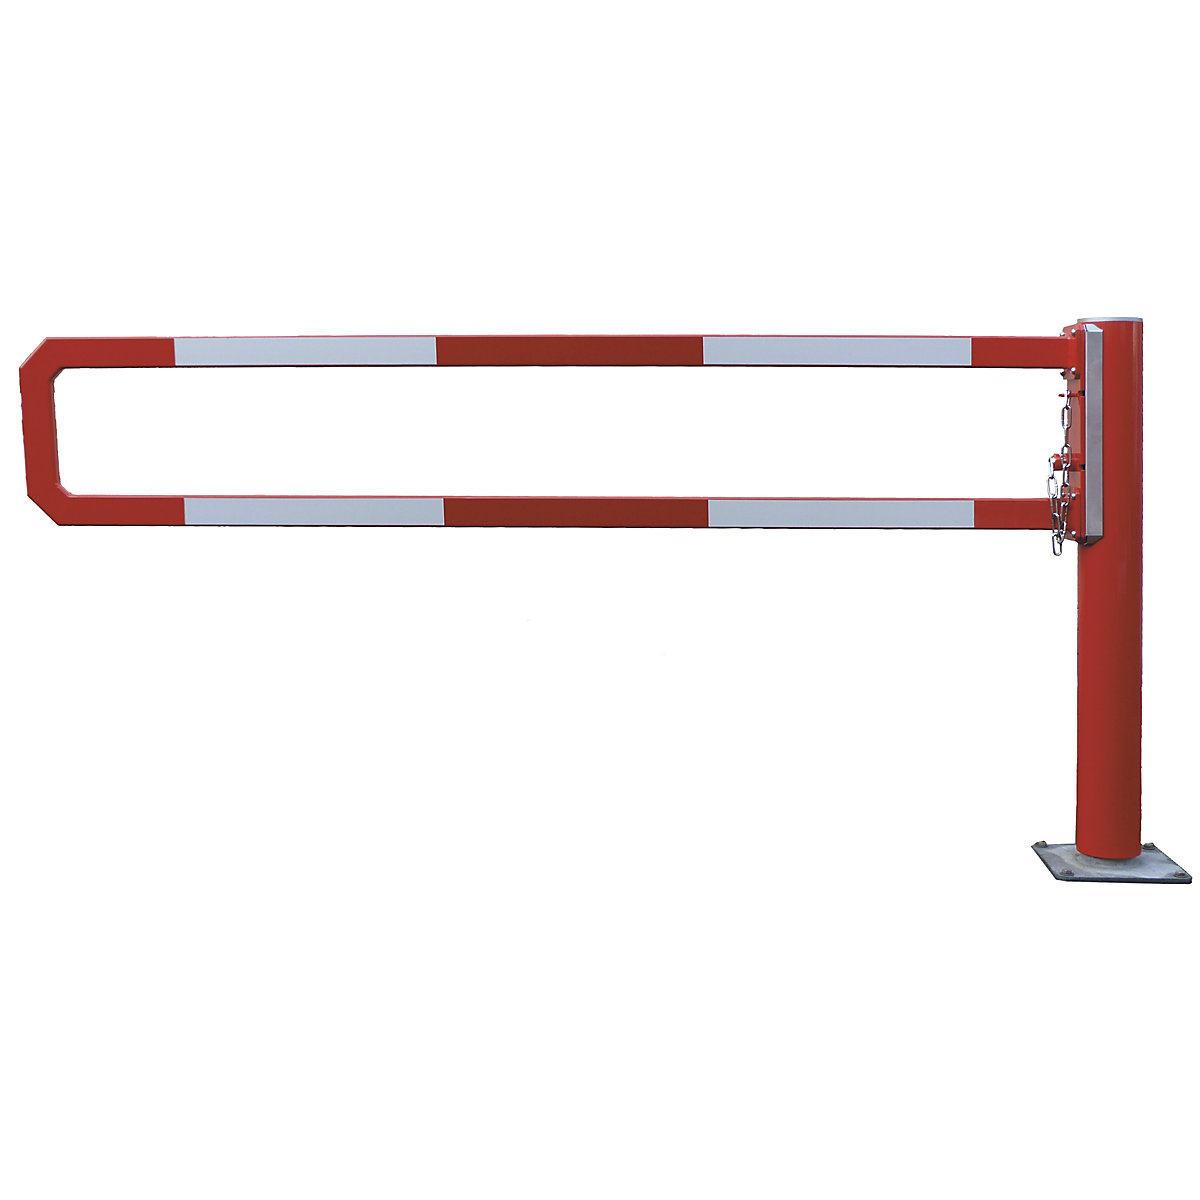 Okretna cestovna rampa – Mannus, svijetla širina 2,5 m, vruće pocinčano, dodatno praškasto lakirano u crvenoj boji-3